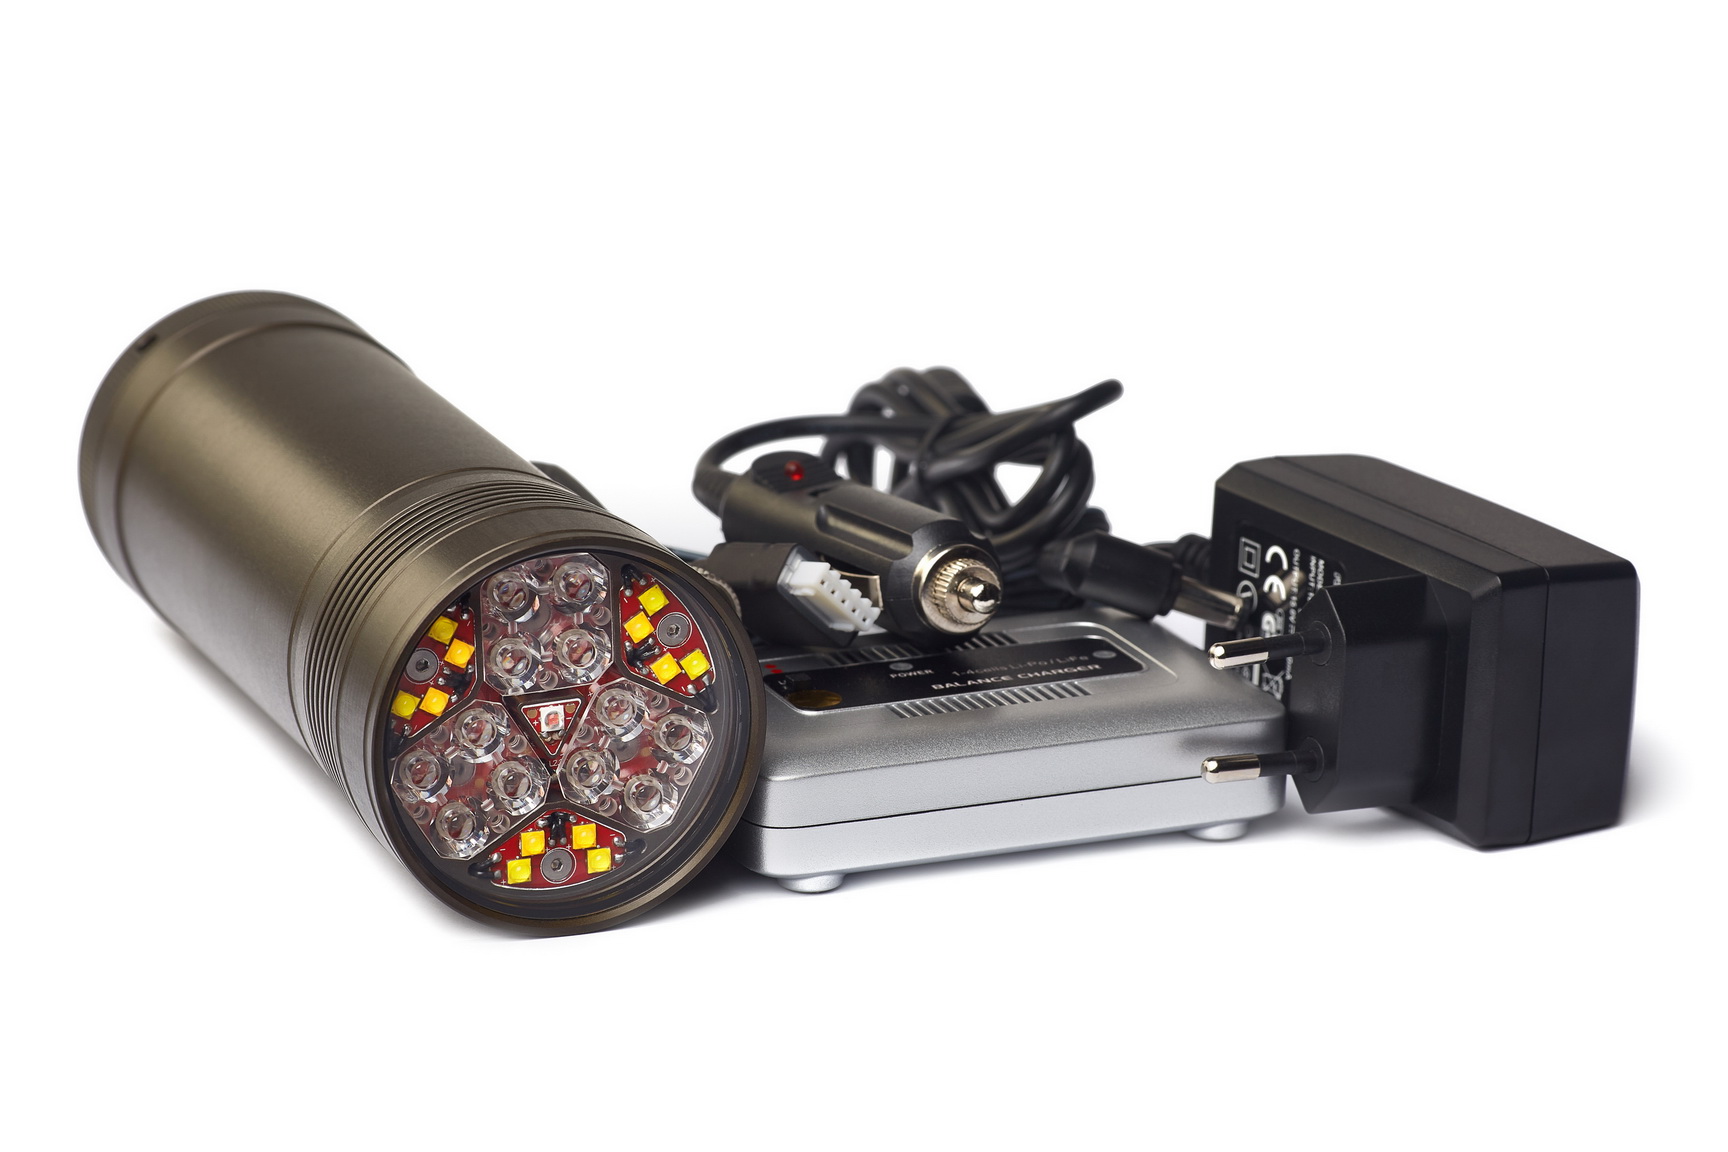 Підводний ліхтар HunterProLight-4 HUB для підводного полювання, дайвінгу, а також відеозйомки.